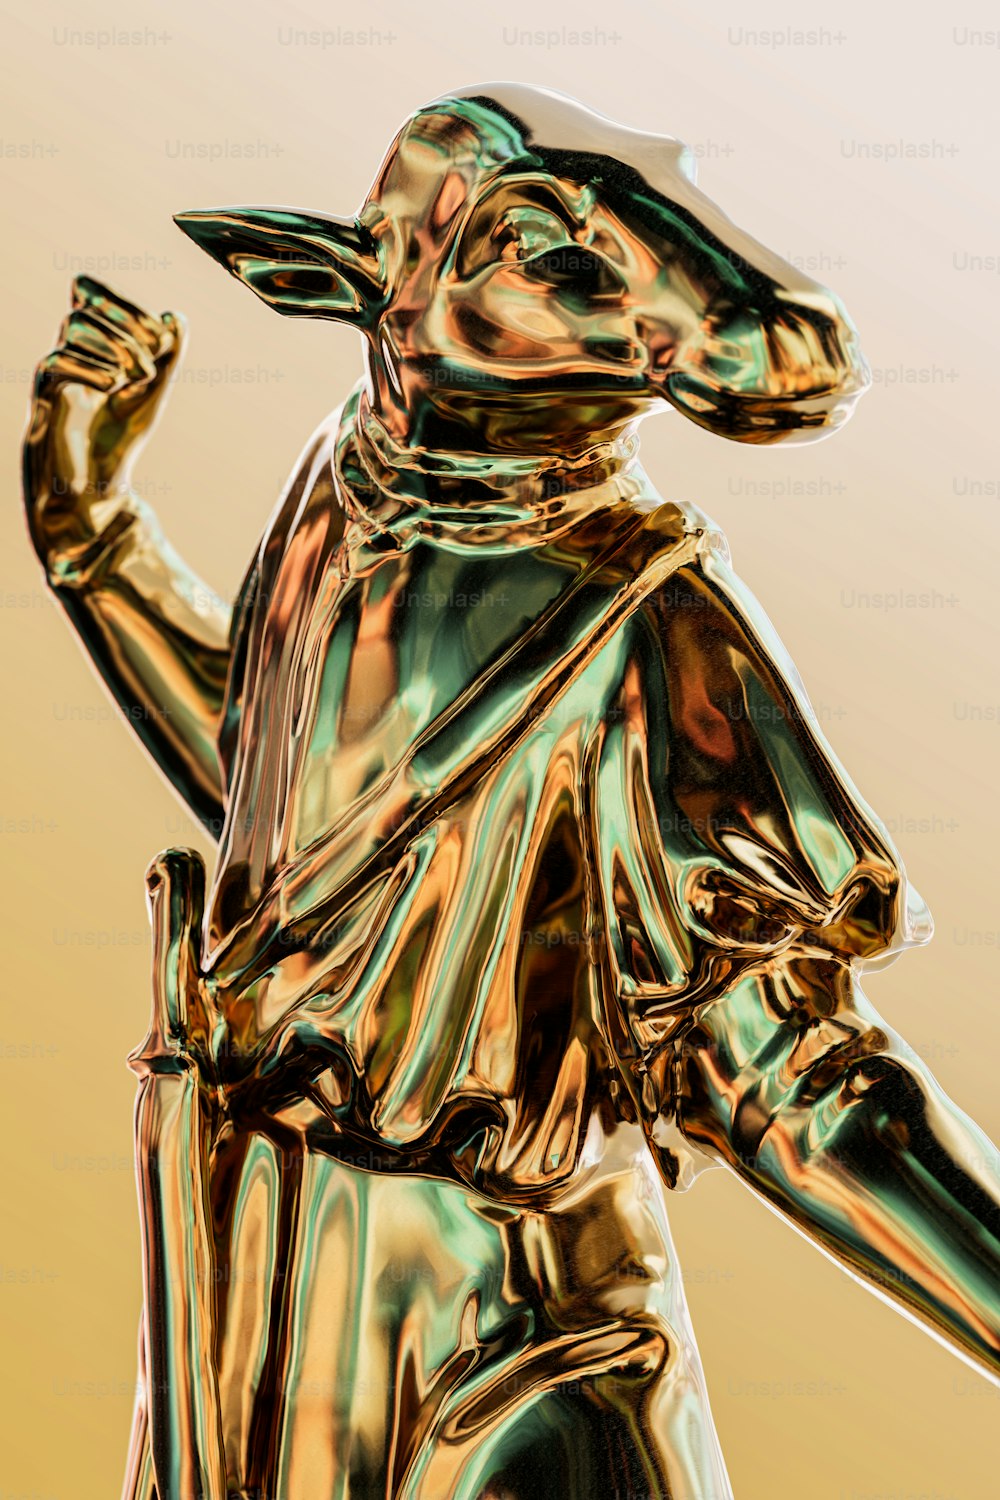 eine goldglänzende Statue eines Mannes, der einen Baseballschläger hält